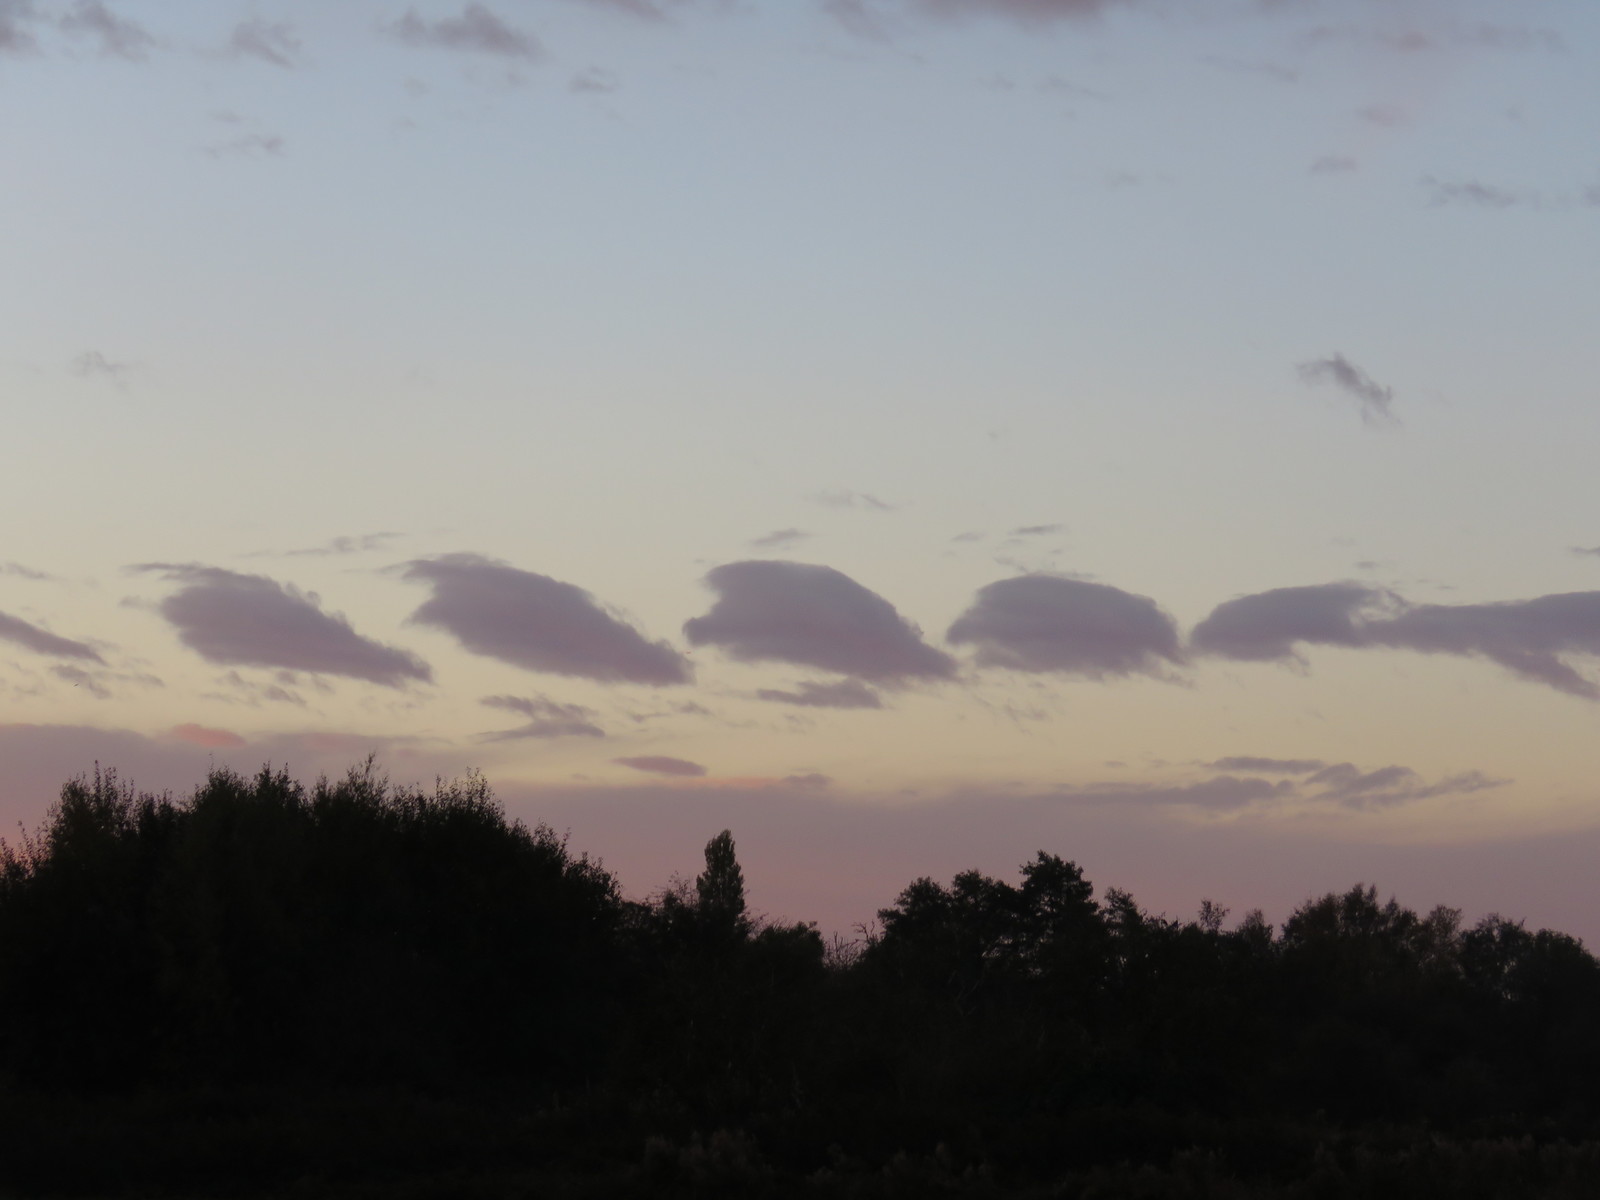 Kelvin-Helmholtz wave clouds